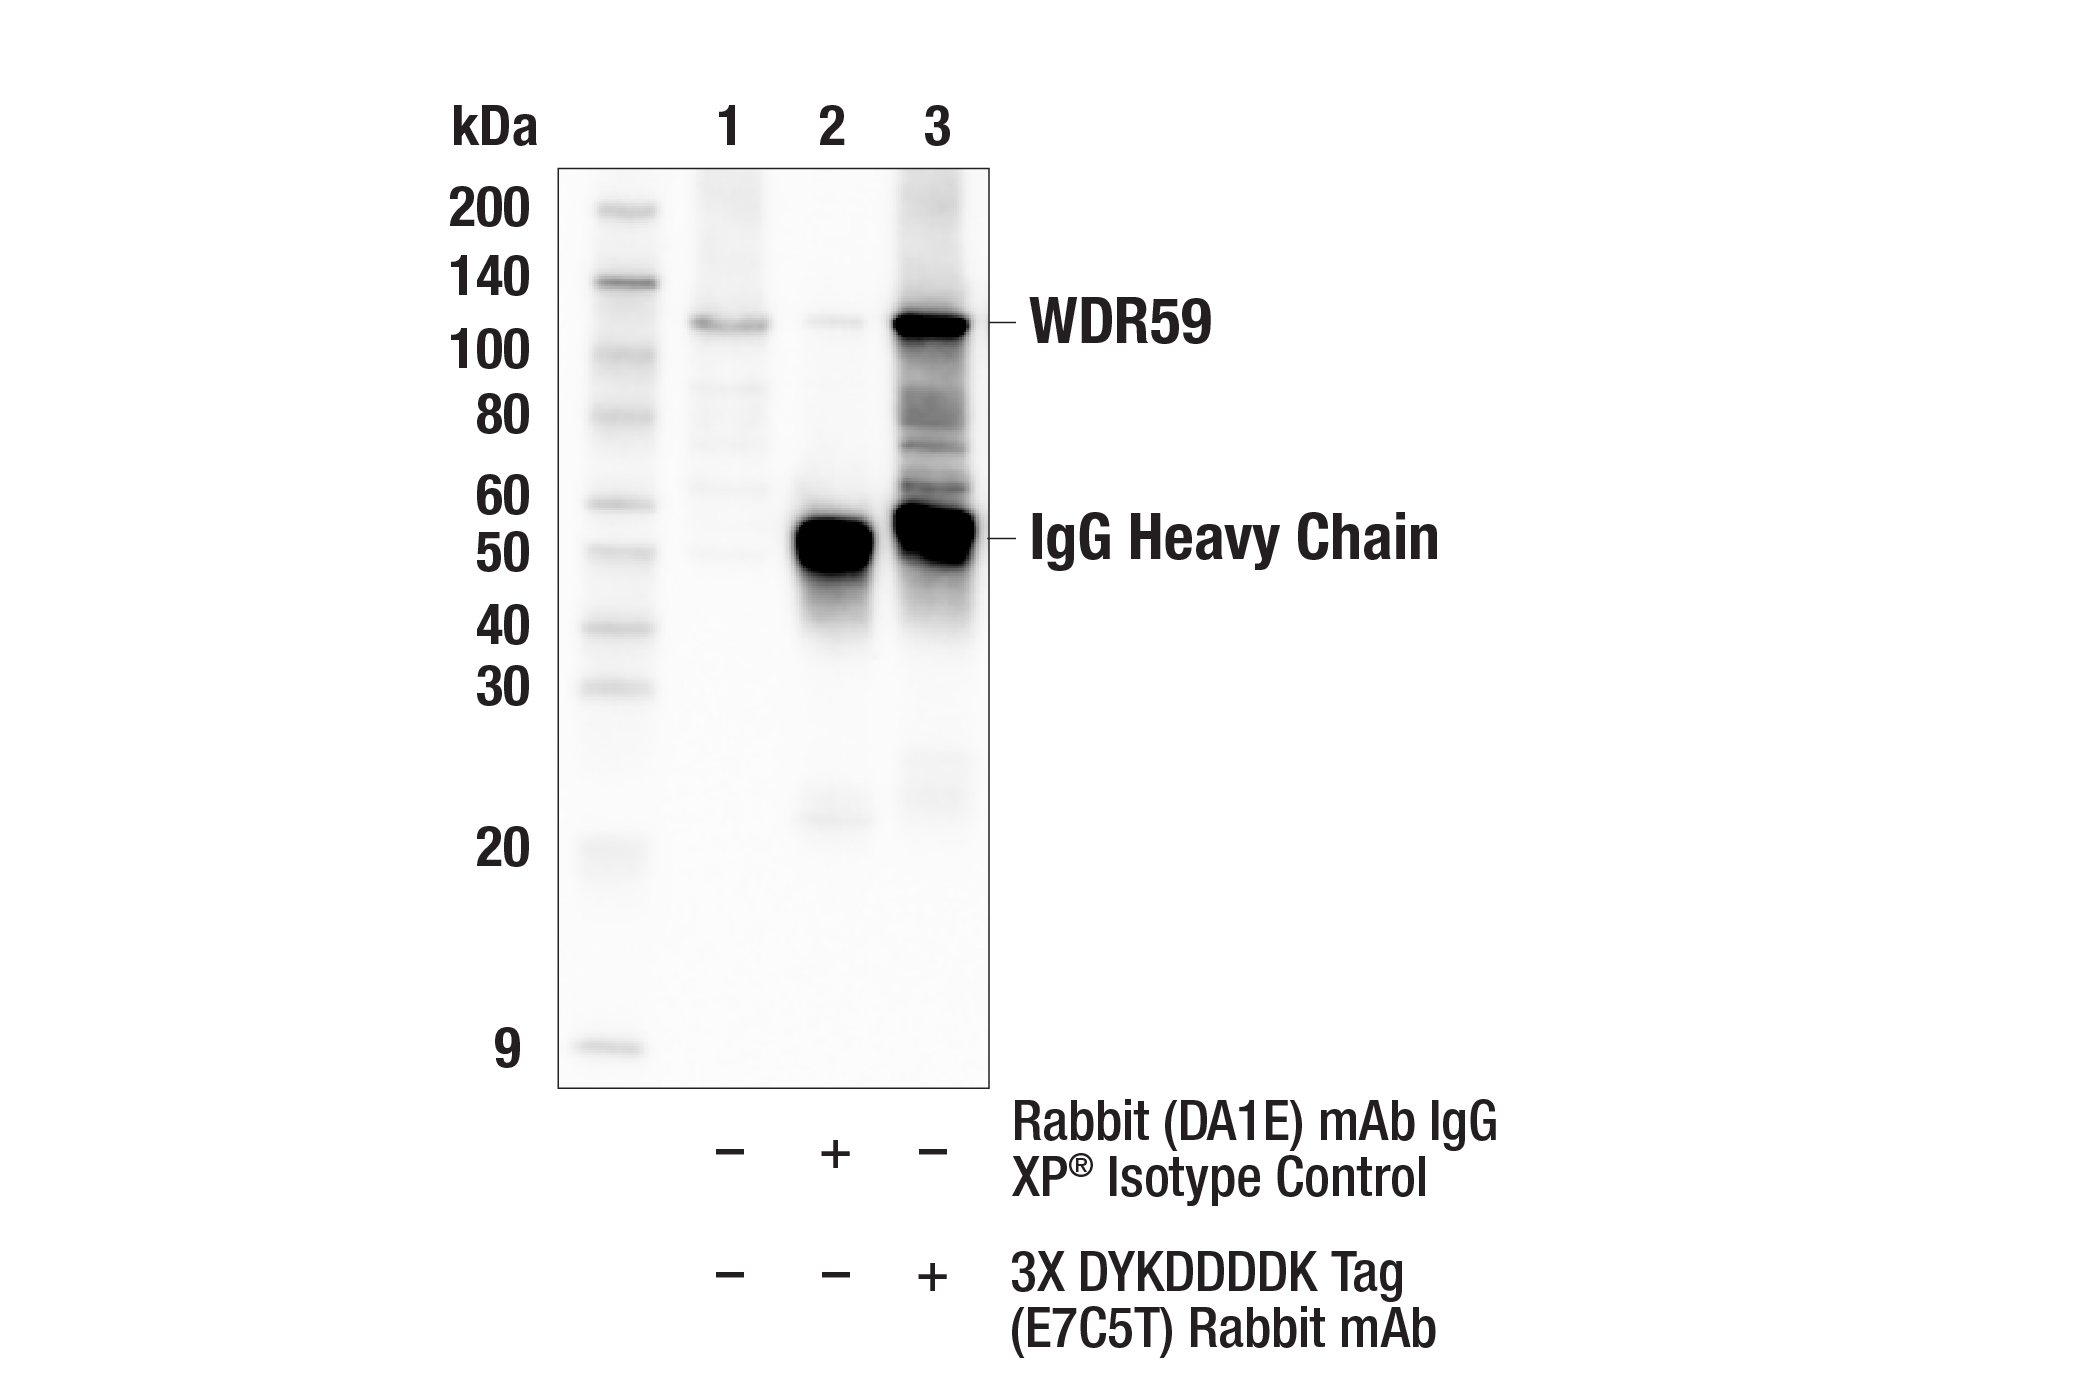 Immunoprecipitation Image 1: 3X DYKDDDDK Tag (E7C5T) Rabbit mAb